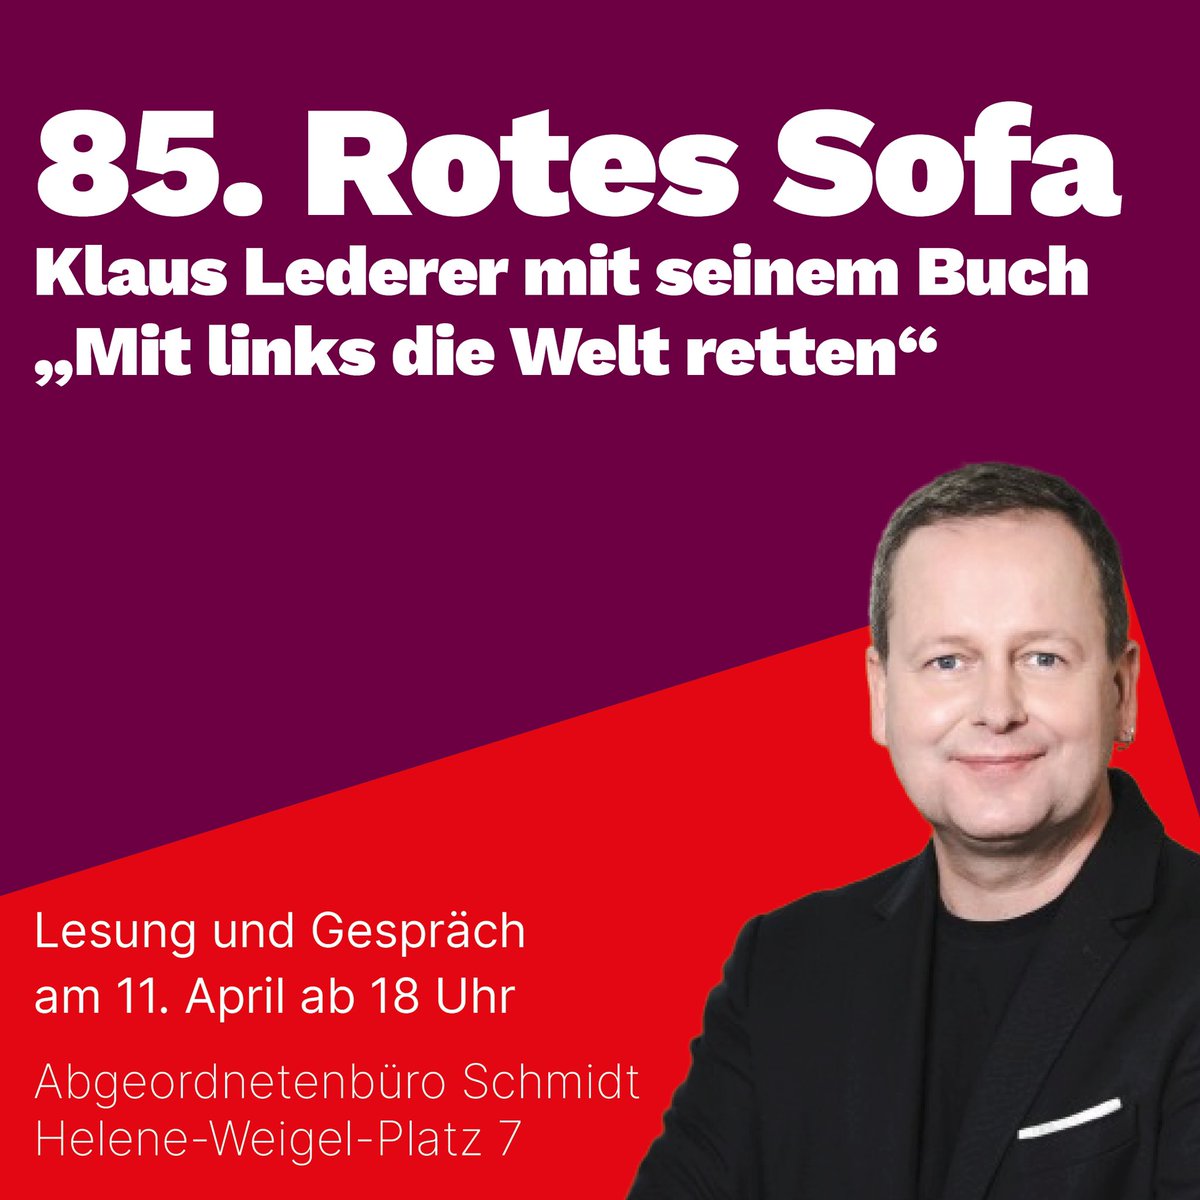 Morgen begrüßen wir zum 85. Roten Sofa Klaus Lederer mit seinem Buch „Mit links die Welt retten“. #RotesSofa #Lesung #Kultur #Marzahn #MaHe